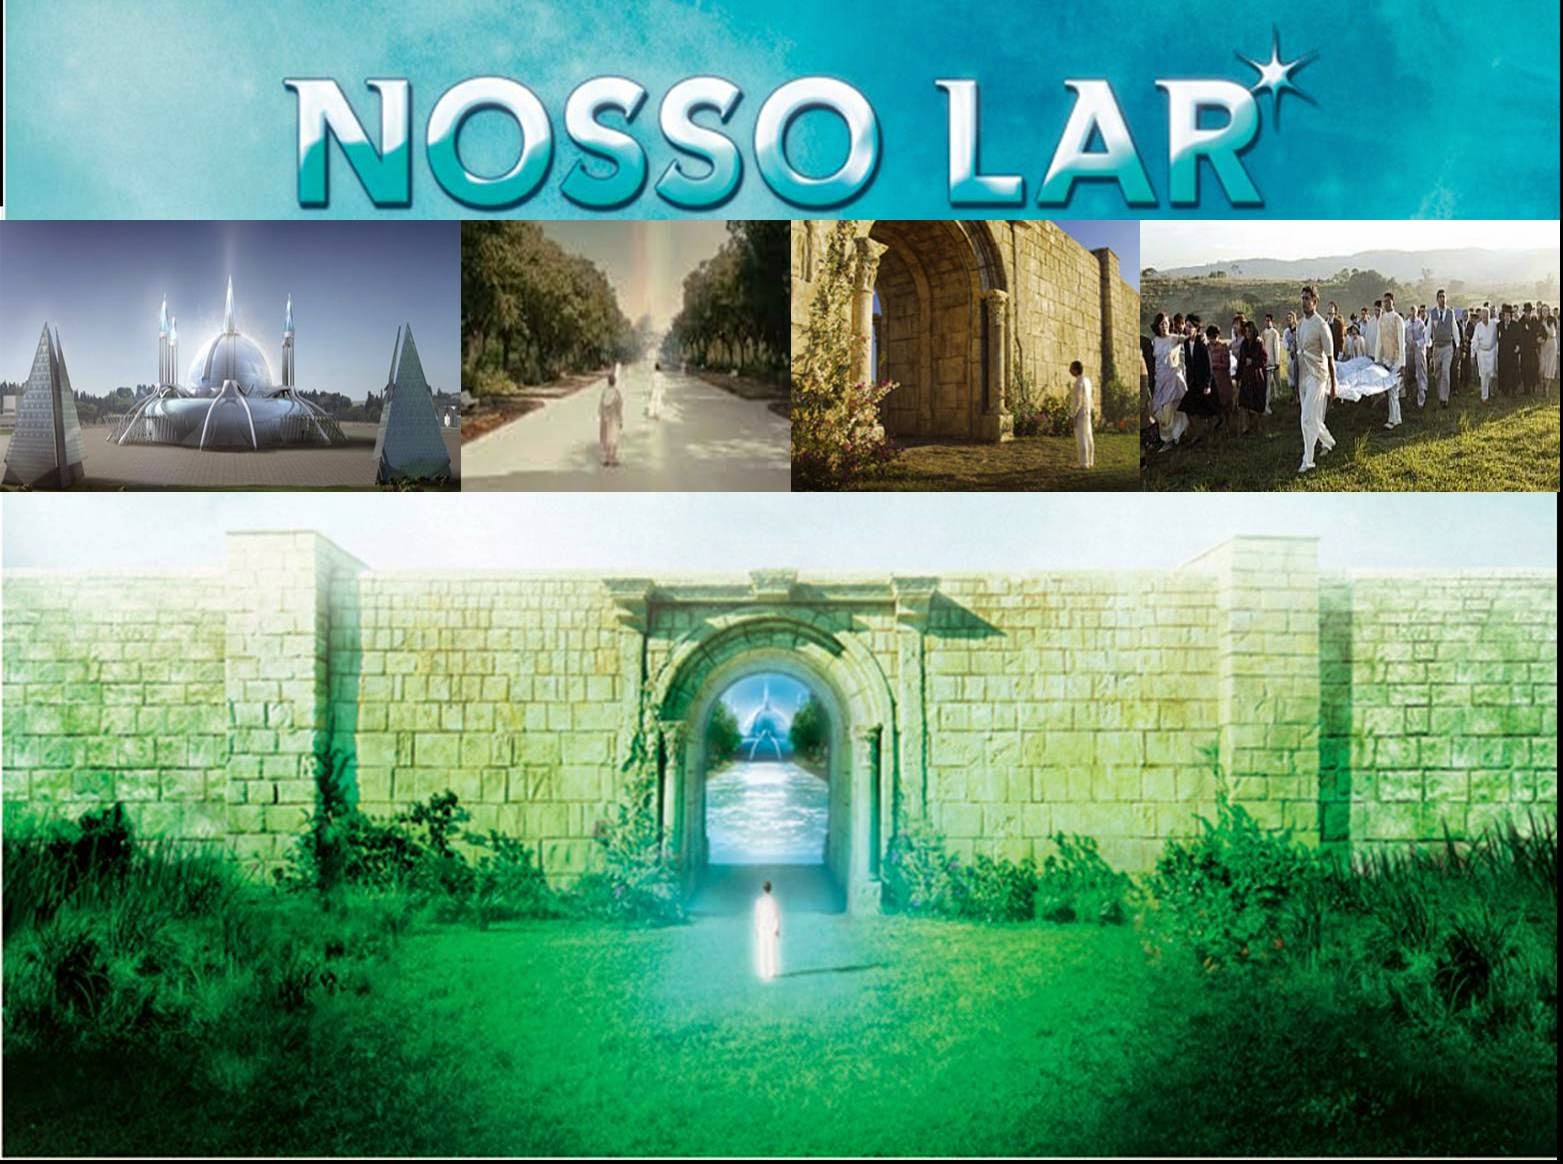 (Film VOSTFR) "Nosso Lar" ou "Notre demeure" (+) Bande Annonce Nosso-lar